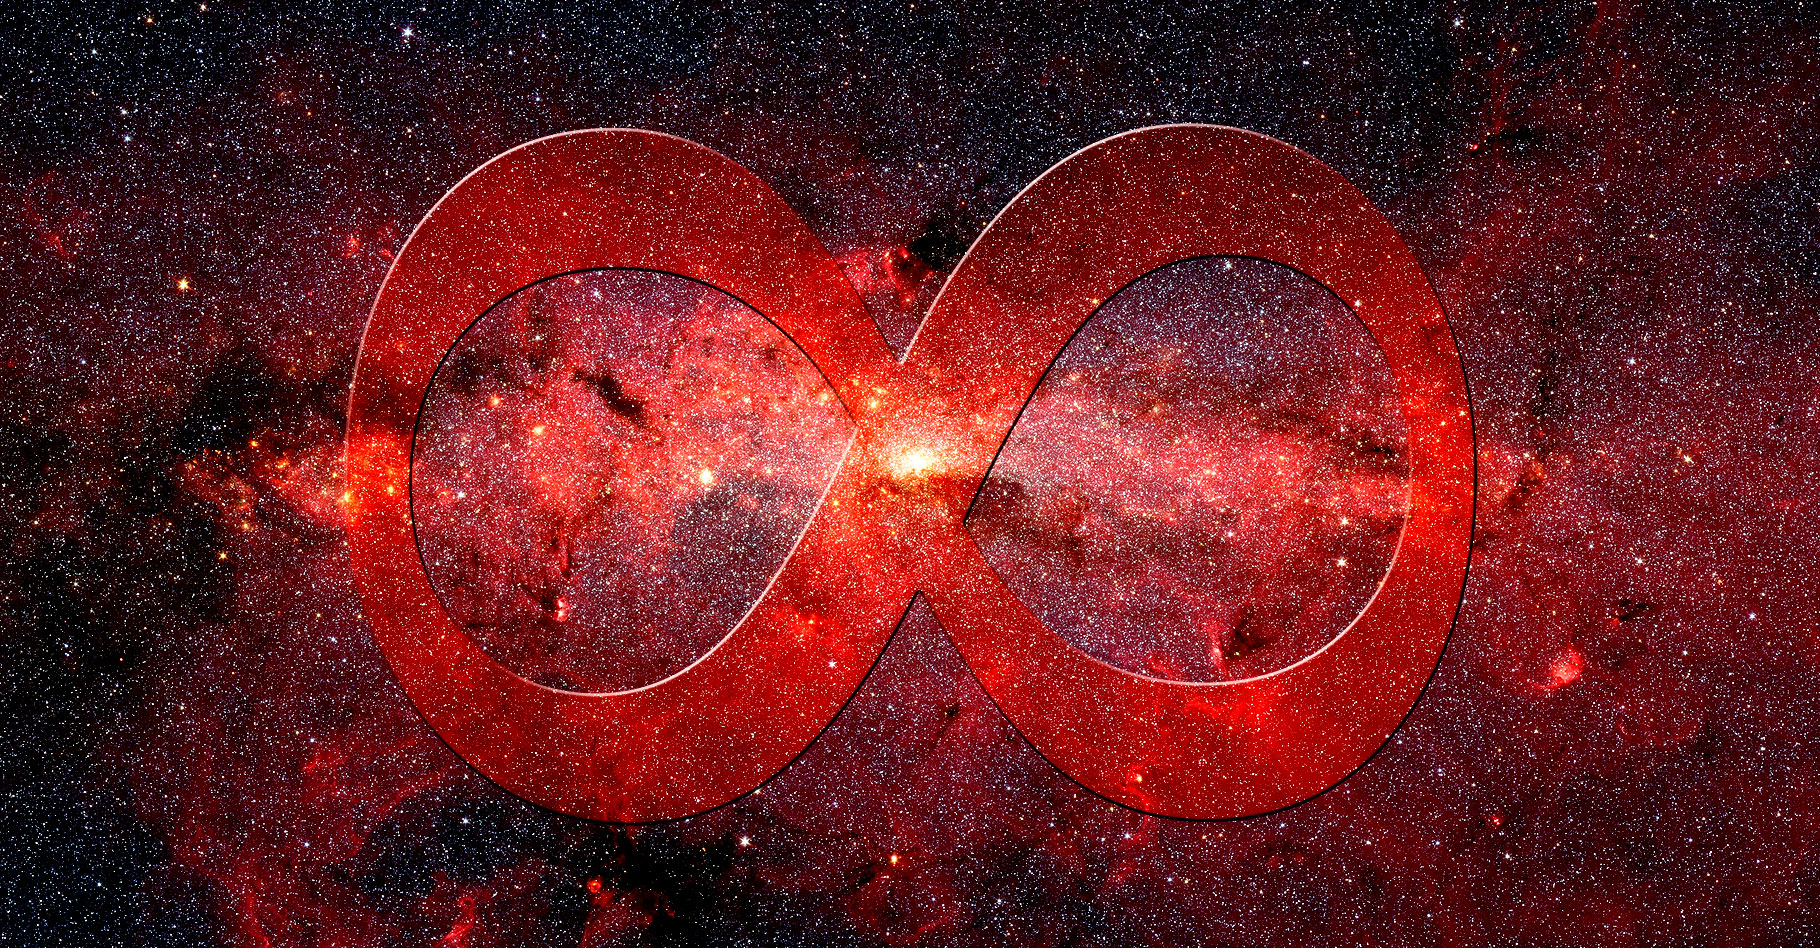 L’infini : mystères et limites de l'Univers. Ici, le cœur de la Voie lactée observé dans l'infrarouge par le télescope spatial Spitzer. © Nasa, JPL-Caltech, S. Stolovy (SSC/Caltech), Wikimedia Commons, DP